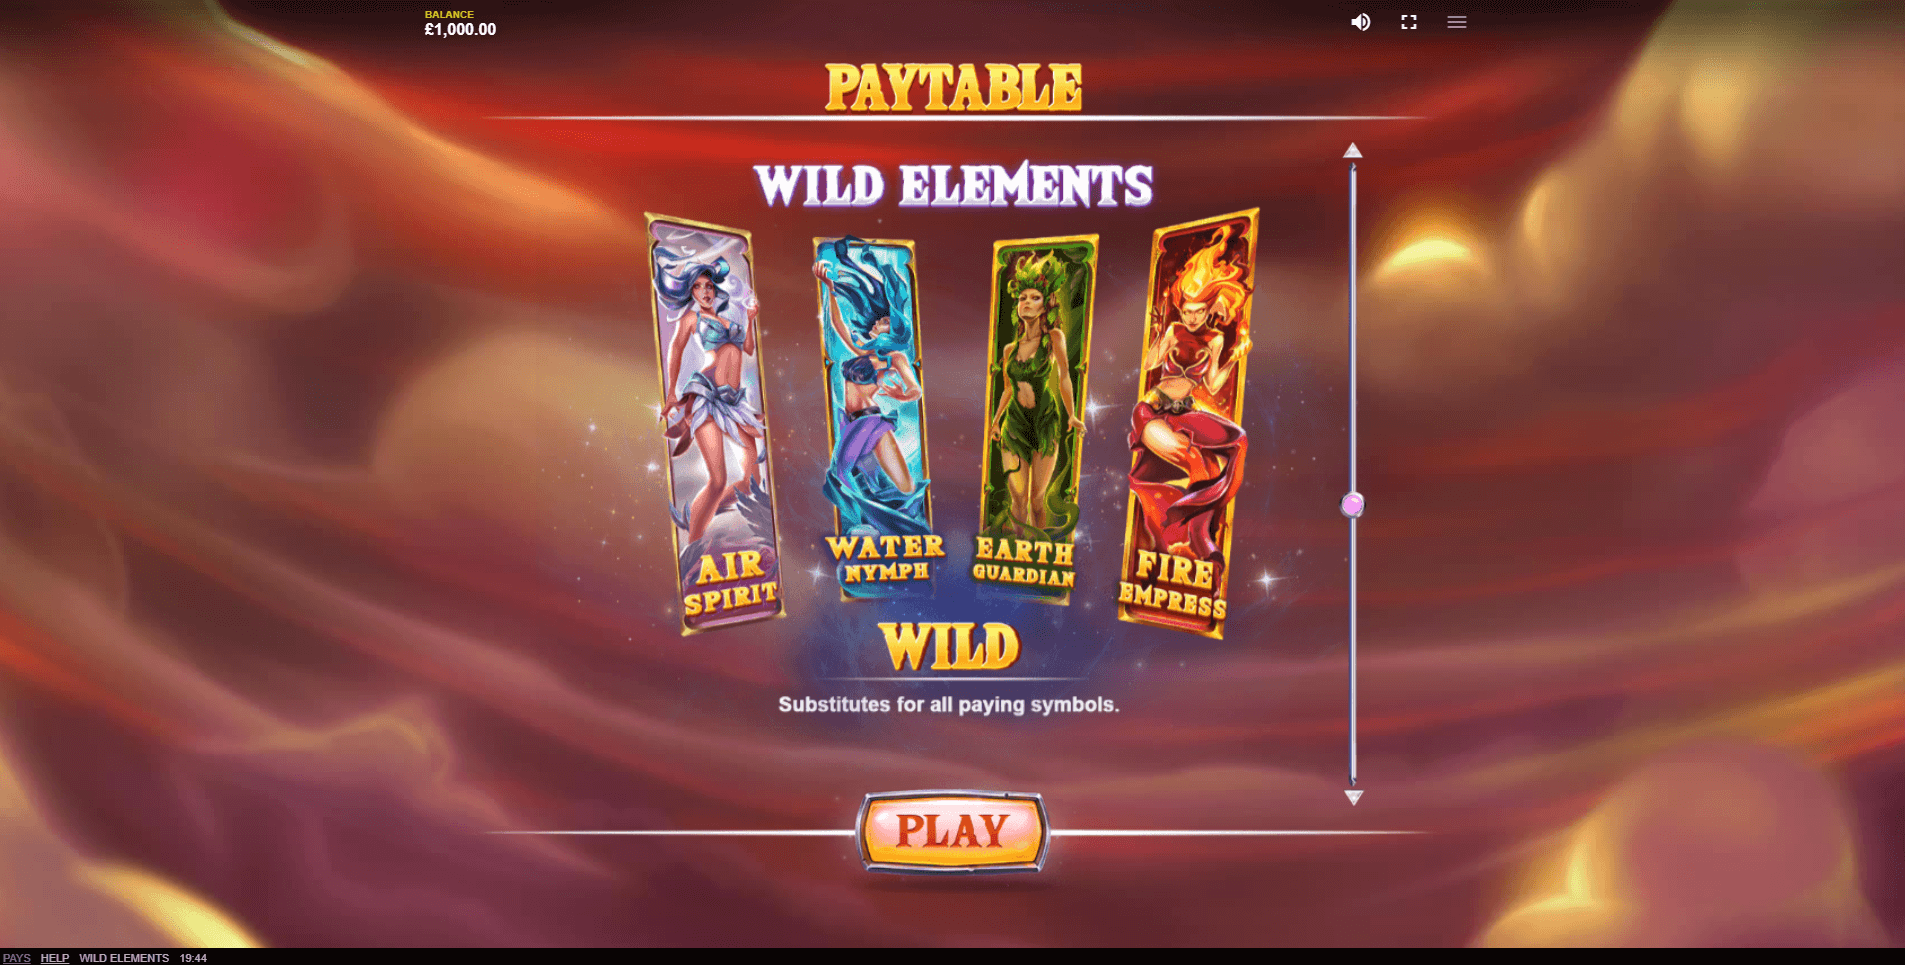 Wild Elements Slot Machine